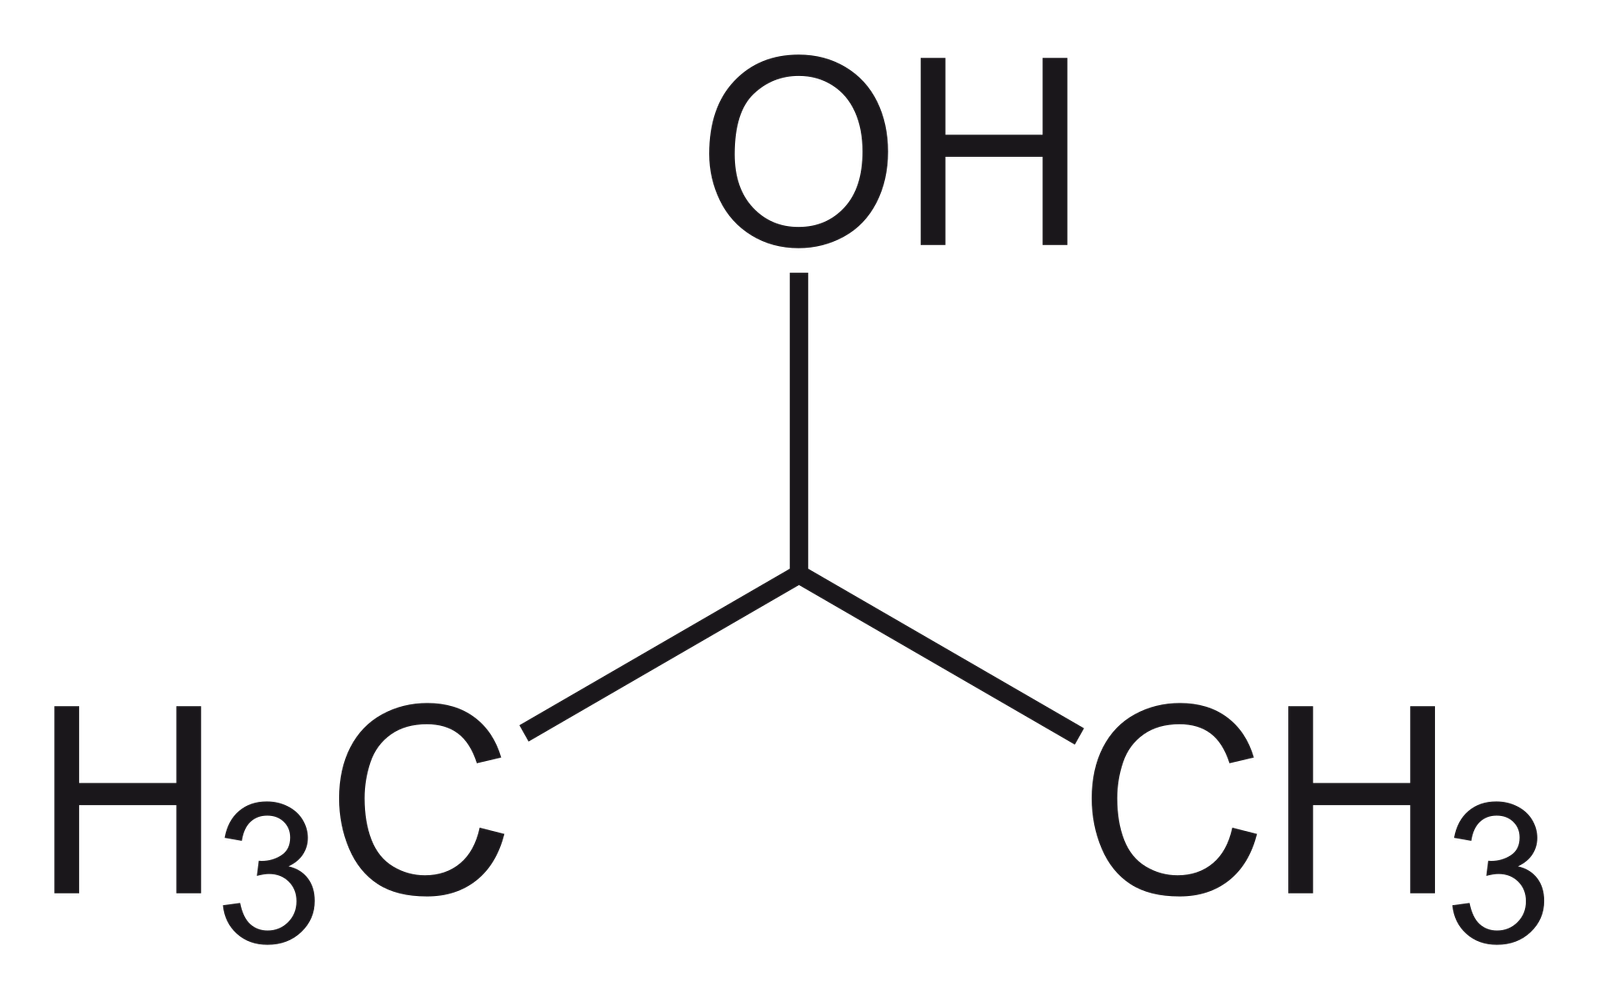 أيزوبروبانول (أيسوبروبانول) Isopropanol